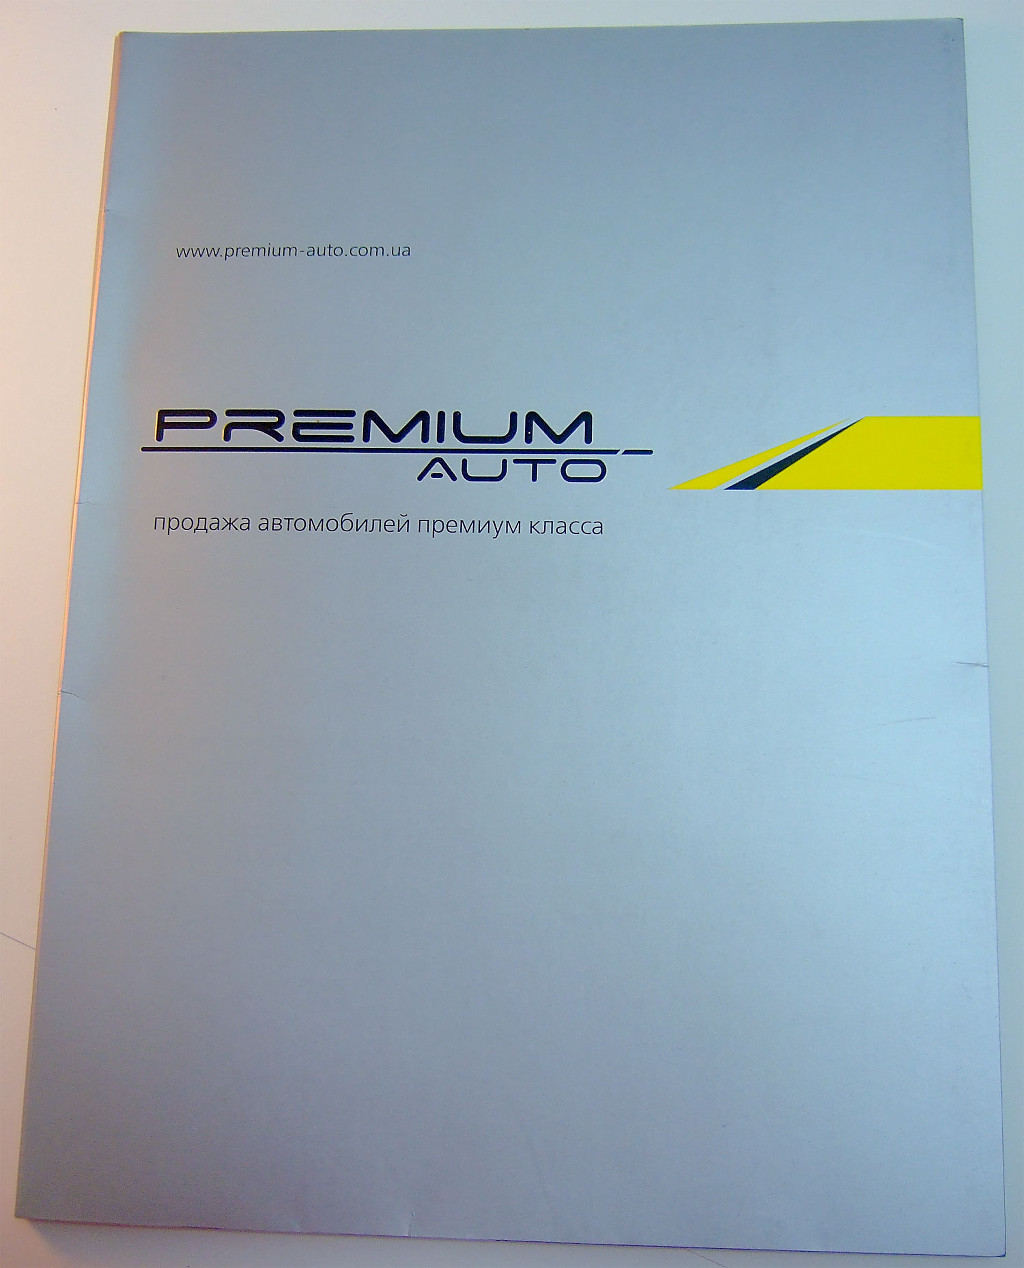 Печать папок «Premium Auto». Полиграфия типографии Макрос, изготовление папок, спецификация 956995-1